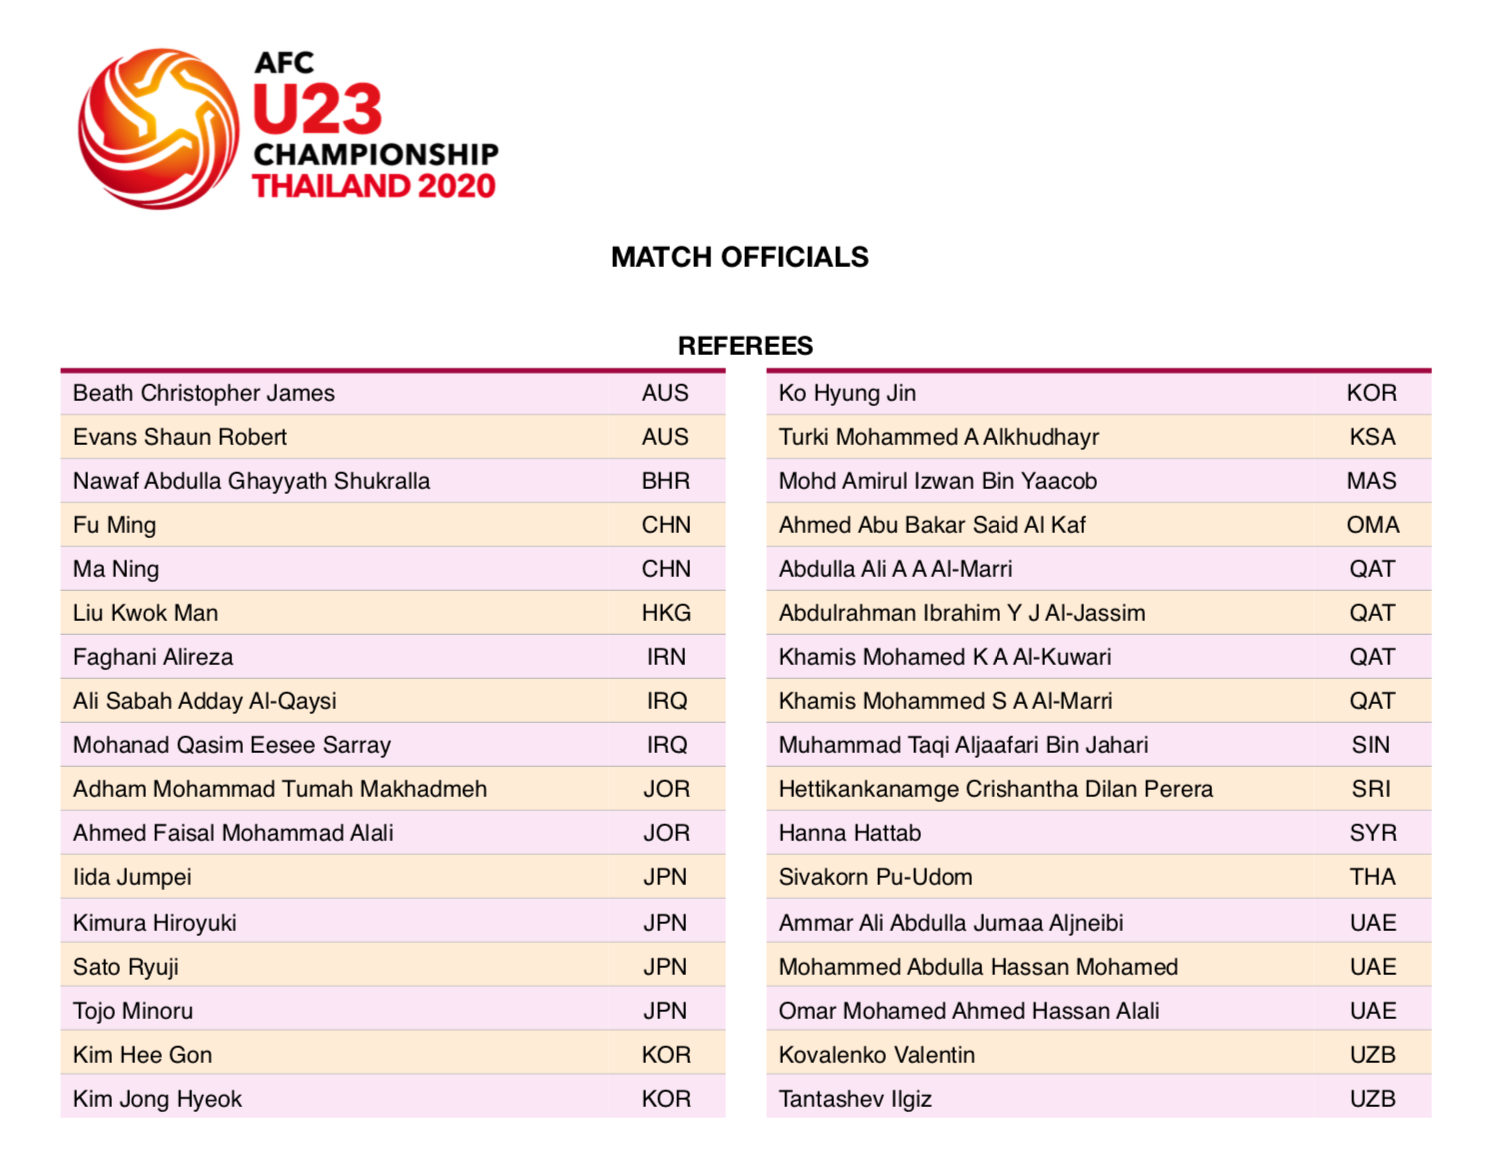 14/16 nước có trọng tài tham dự VCK U23 châu Á 2020: Vắng đại diện Việt Nam và quốc gia bí ẩn nhất thế giới - Ảnh 3.